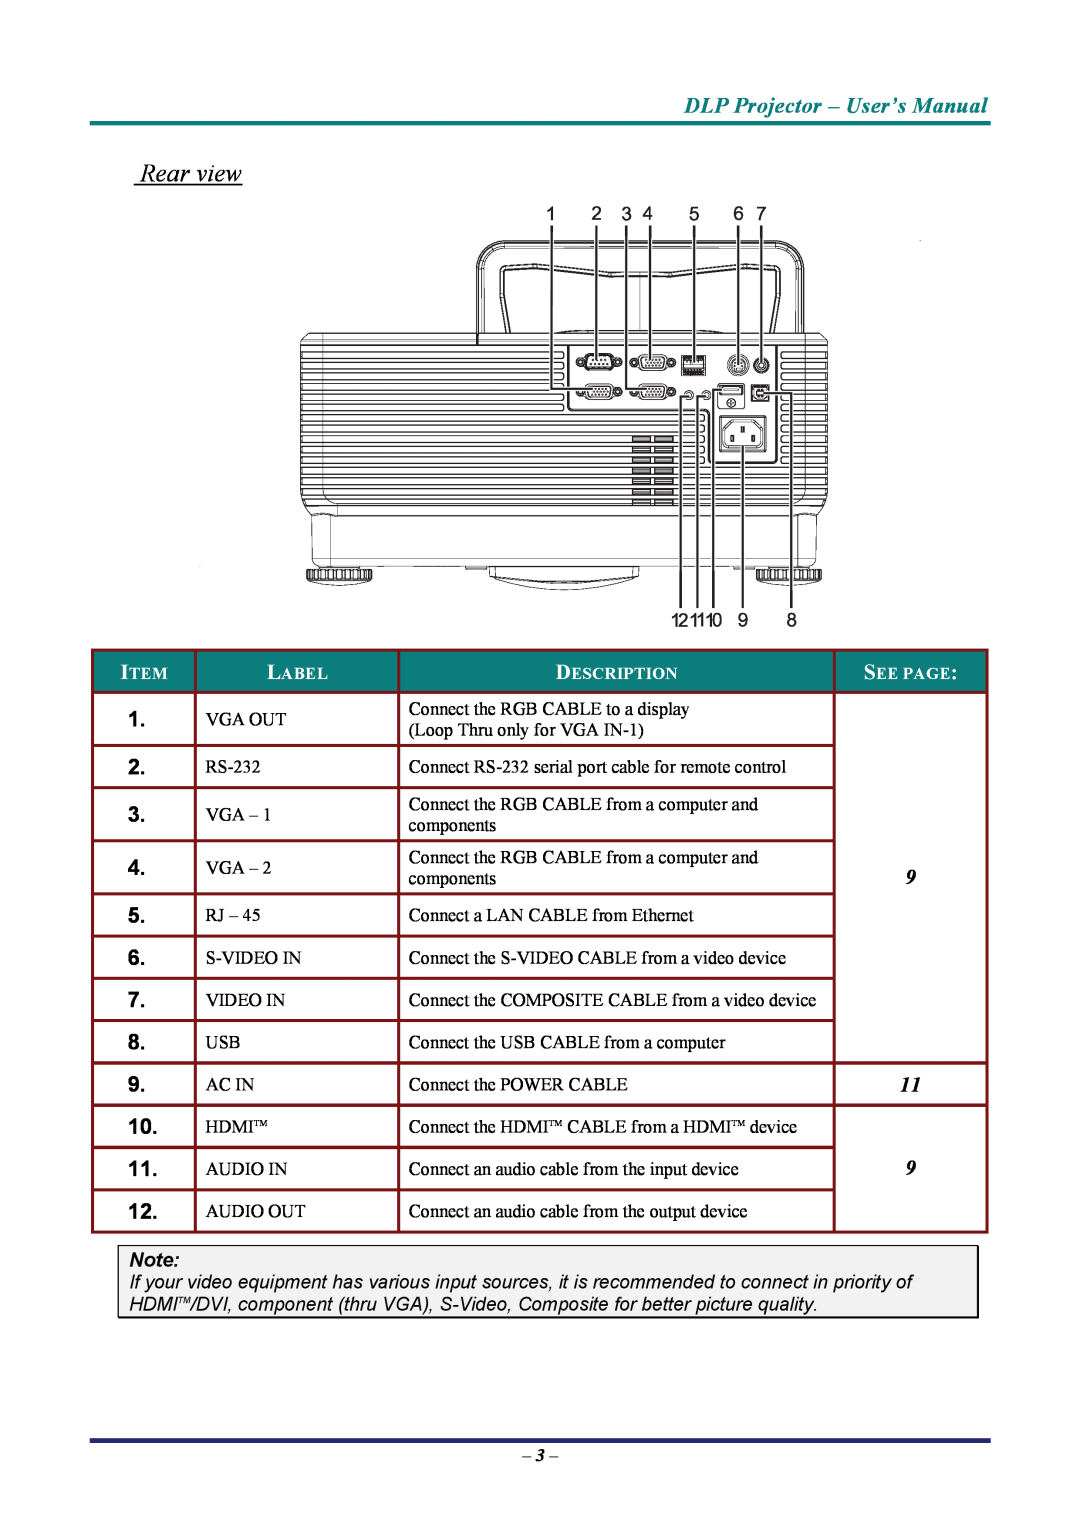 Vivitek D7 user manual Rear view, DLP Projector - User’s Manual, Label, Description, See Page 